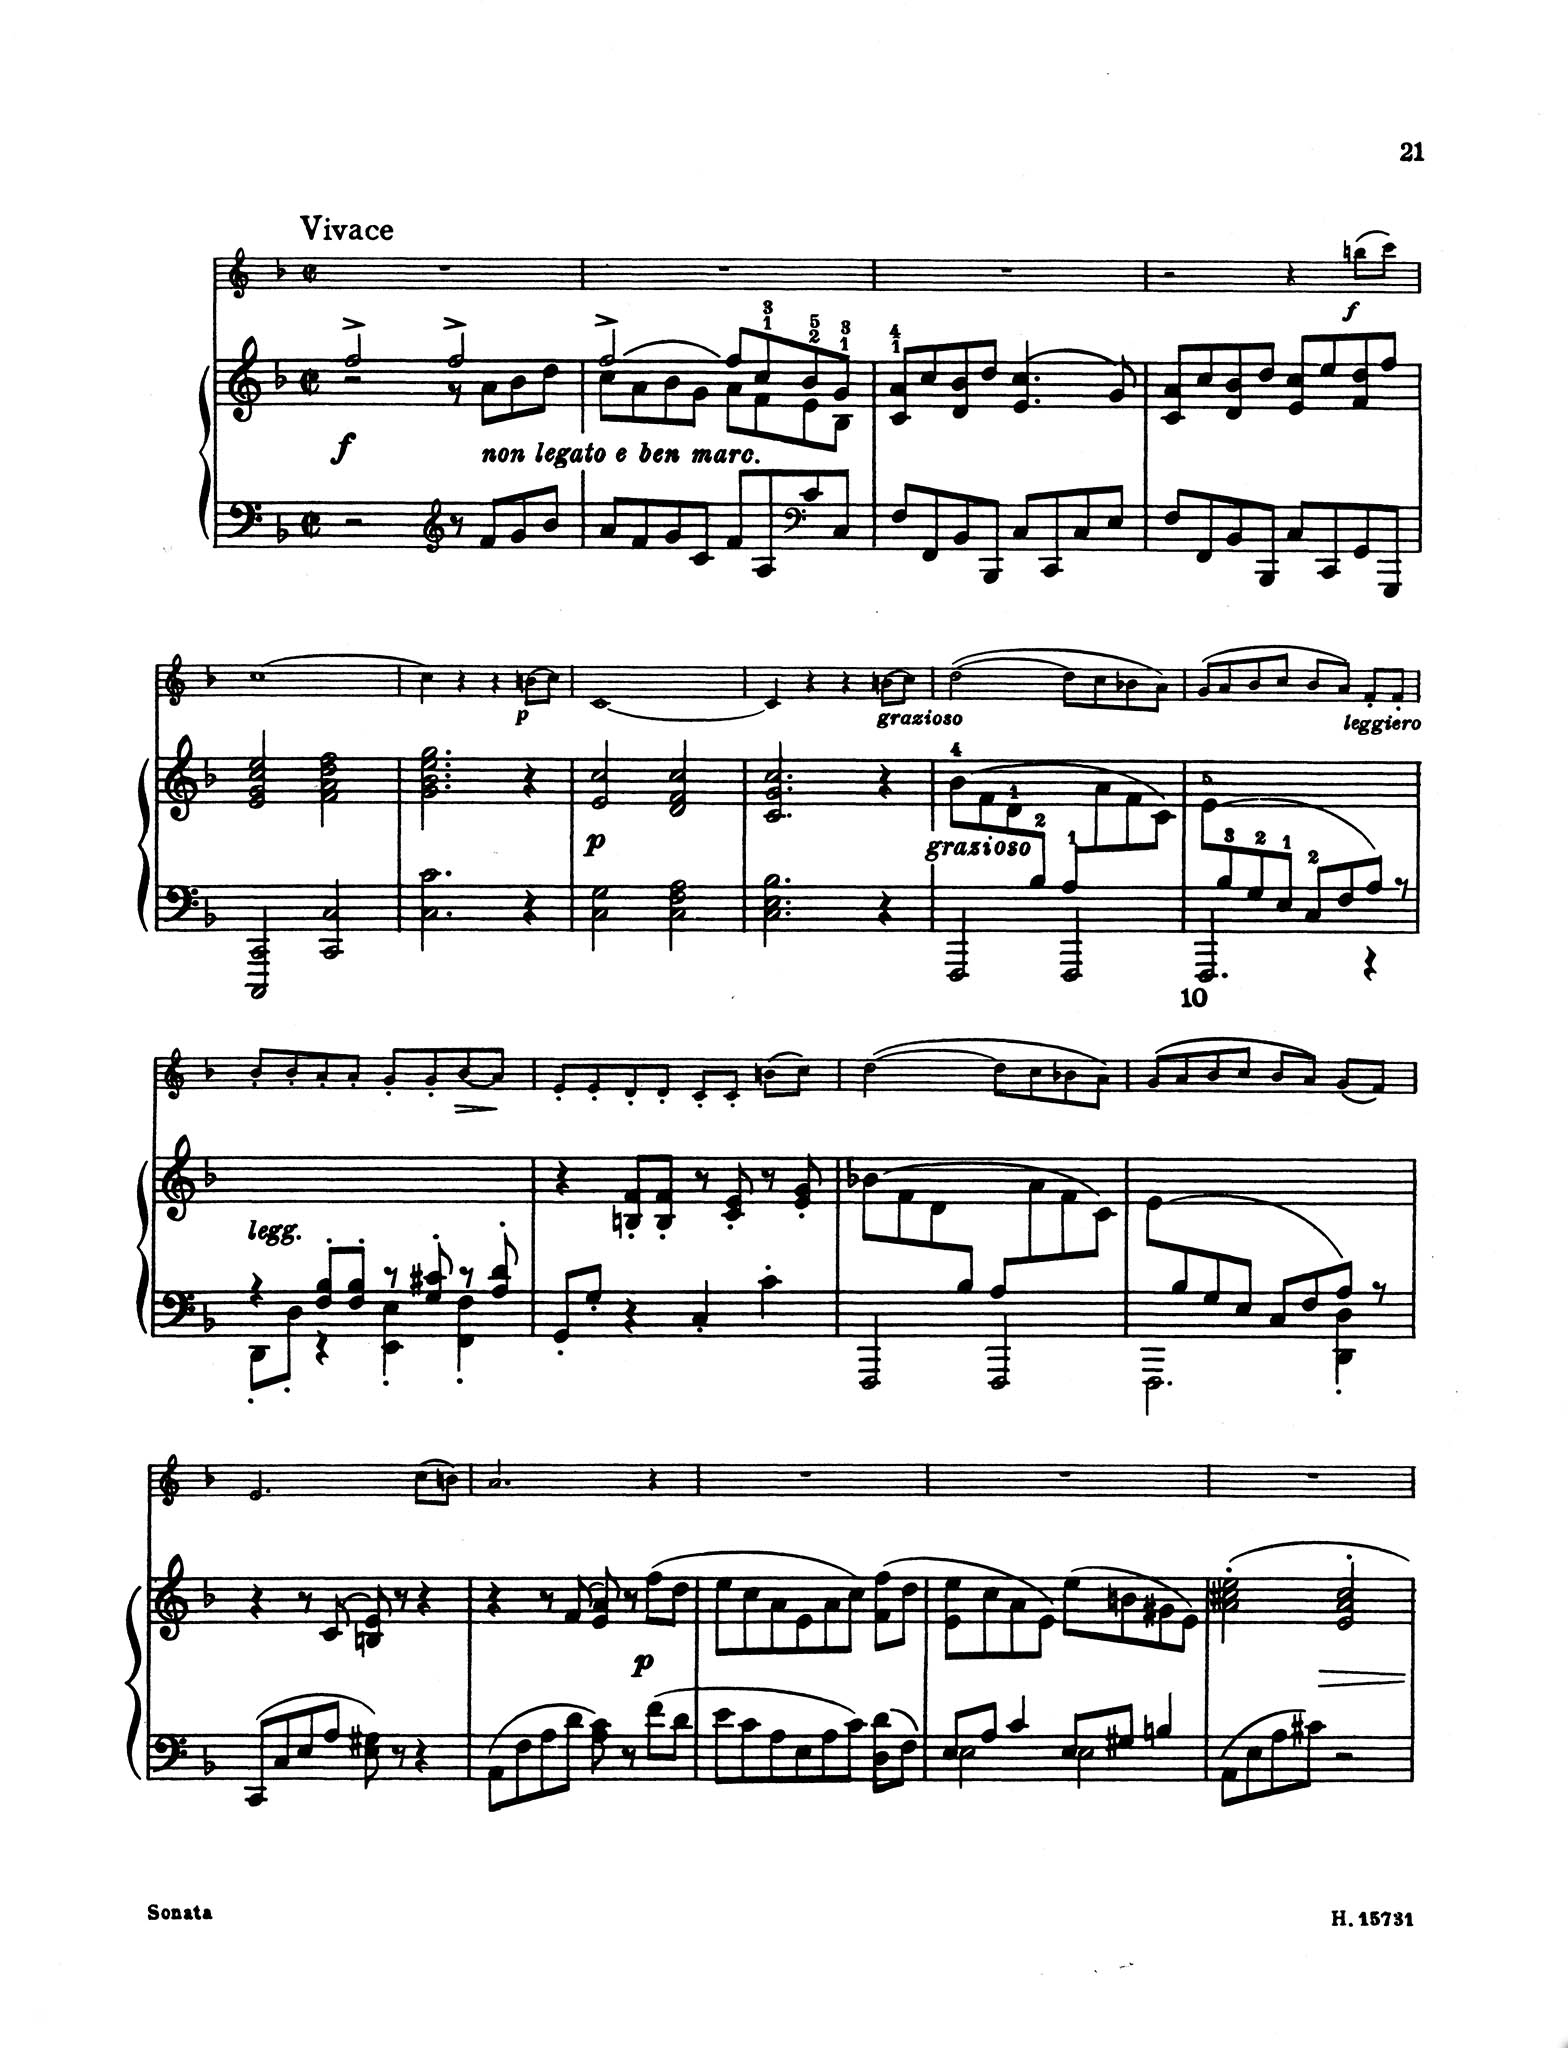 Sonata in F Minor, Op. 120 No. 1 - Movement 4